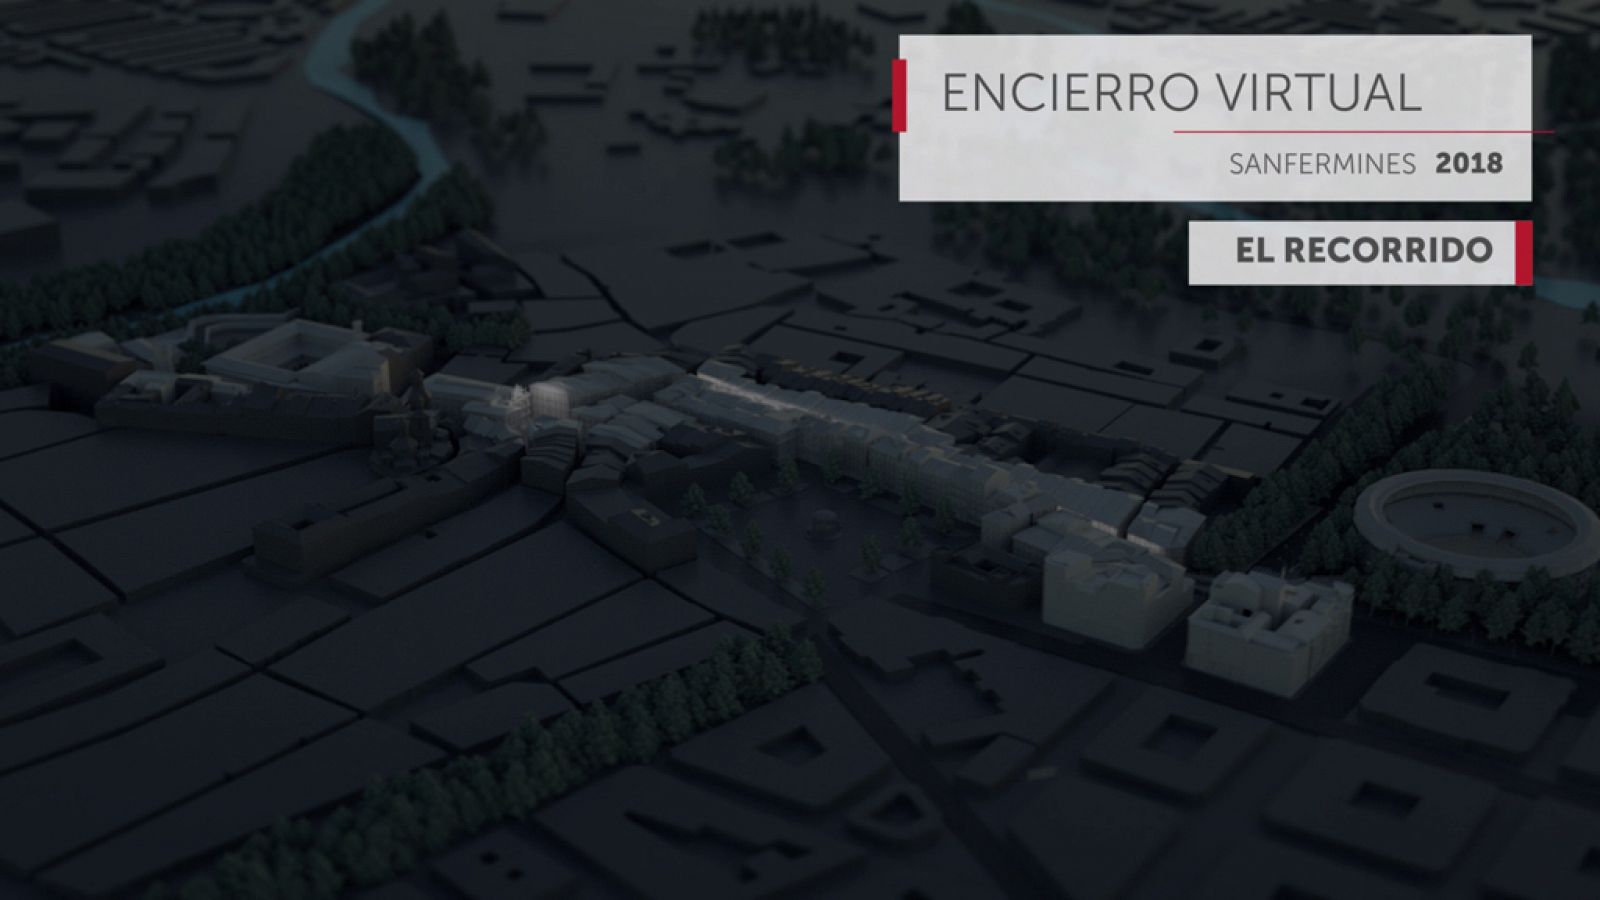 Recorrido virual en 3D de San Fermín 2018